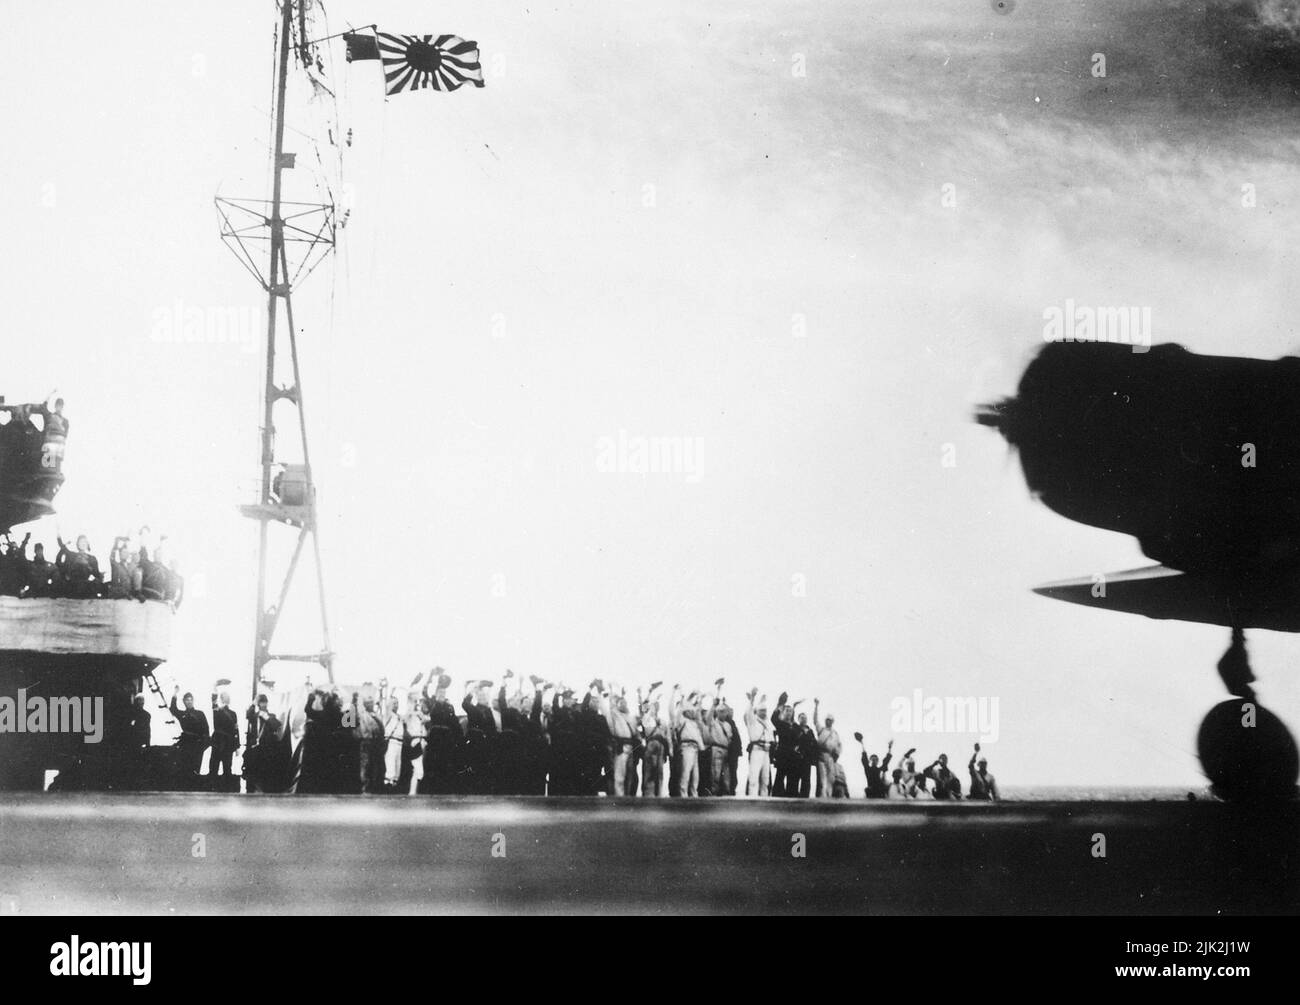 Photographie japonaise prise à bord d'un transporteur japonais avant l'attaque sur Pearl Harbor, 7 décembre 1941. Il montre les hommes levant les bras en hommage avec la silhouette d'un avion et le drapeau du Soleil montant. Le propulseur de l'avion tourne, de sorte que cette image a peut-être été prise comme les avions quittaient dans leur célèbre et infâme mission. Banque D'Images